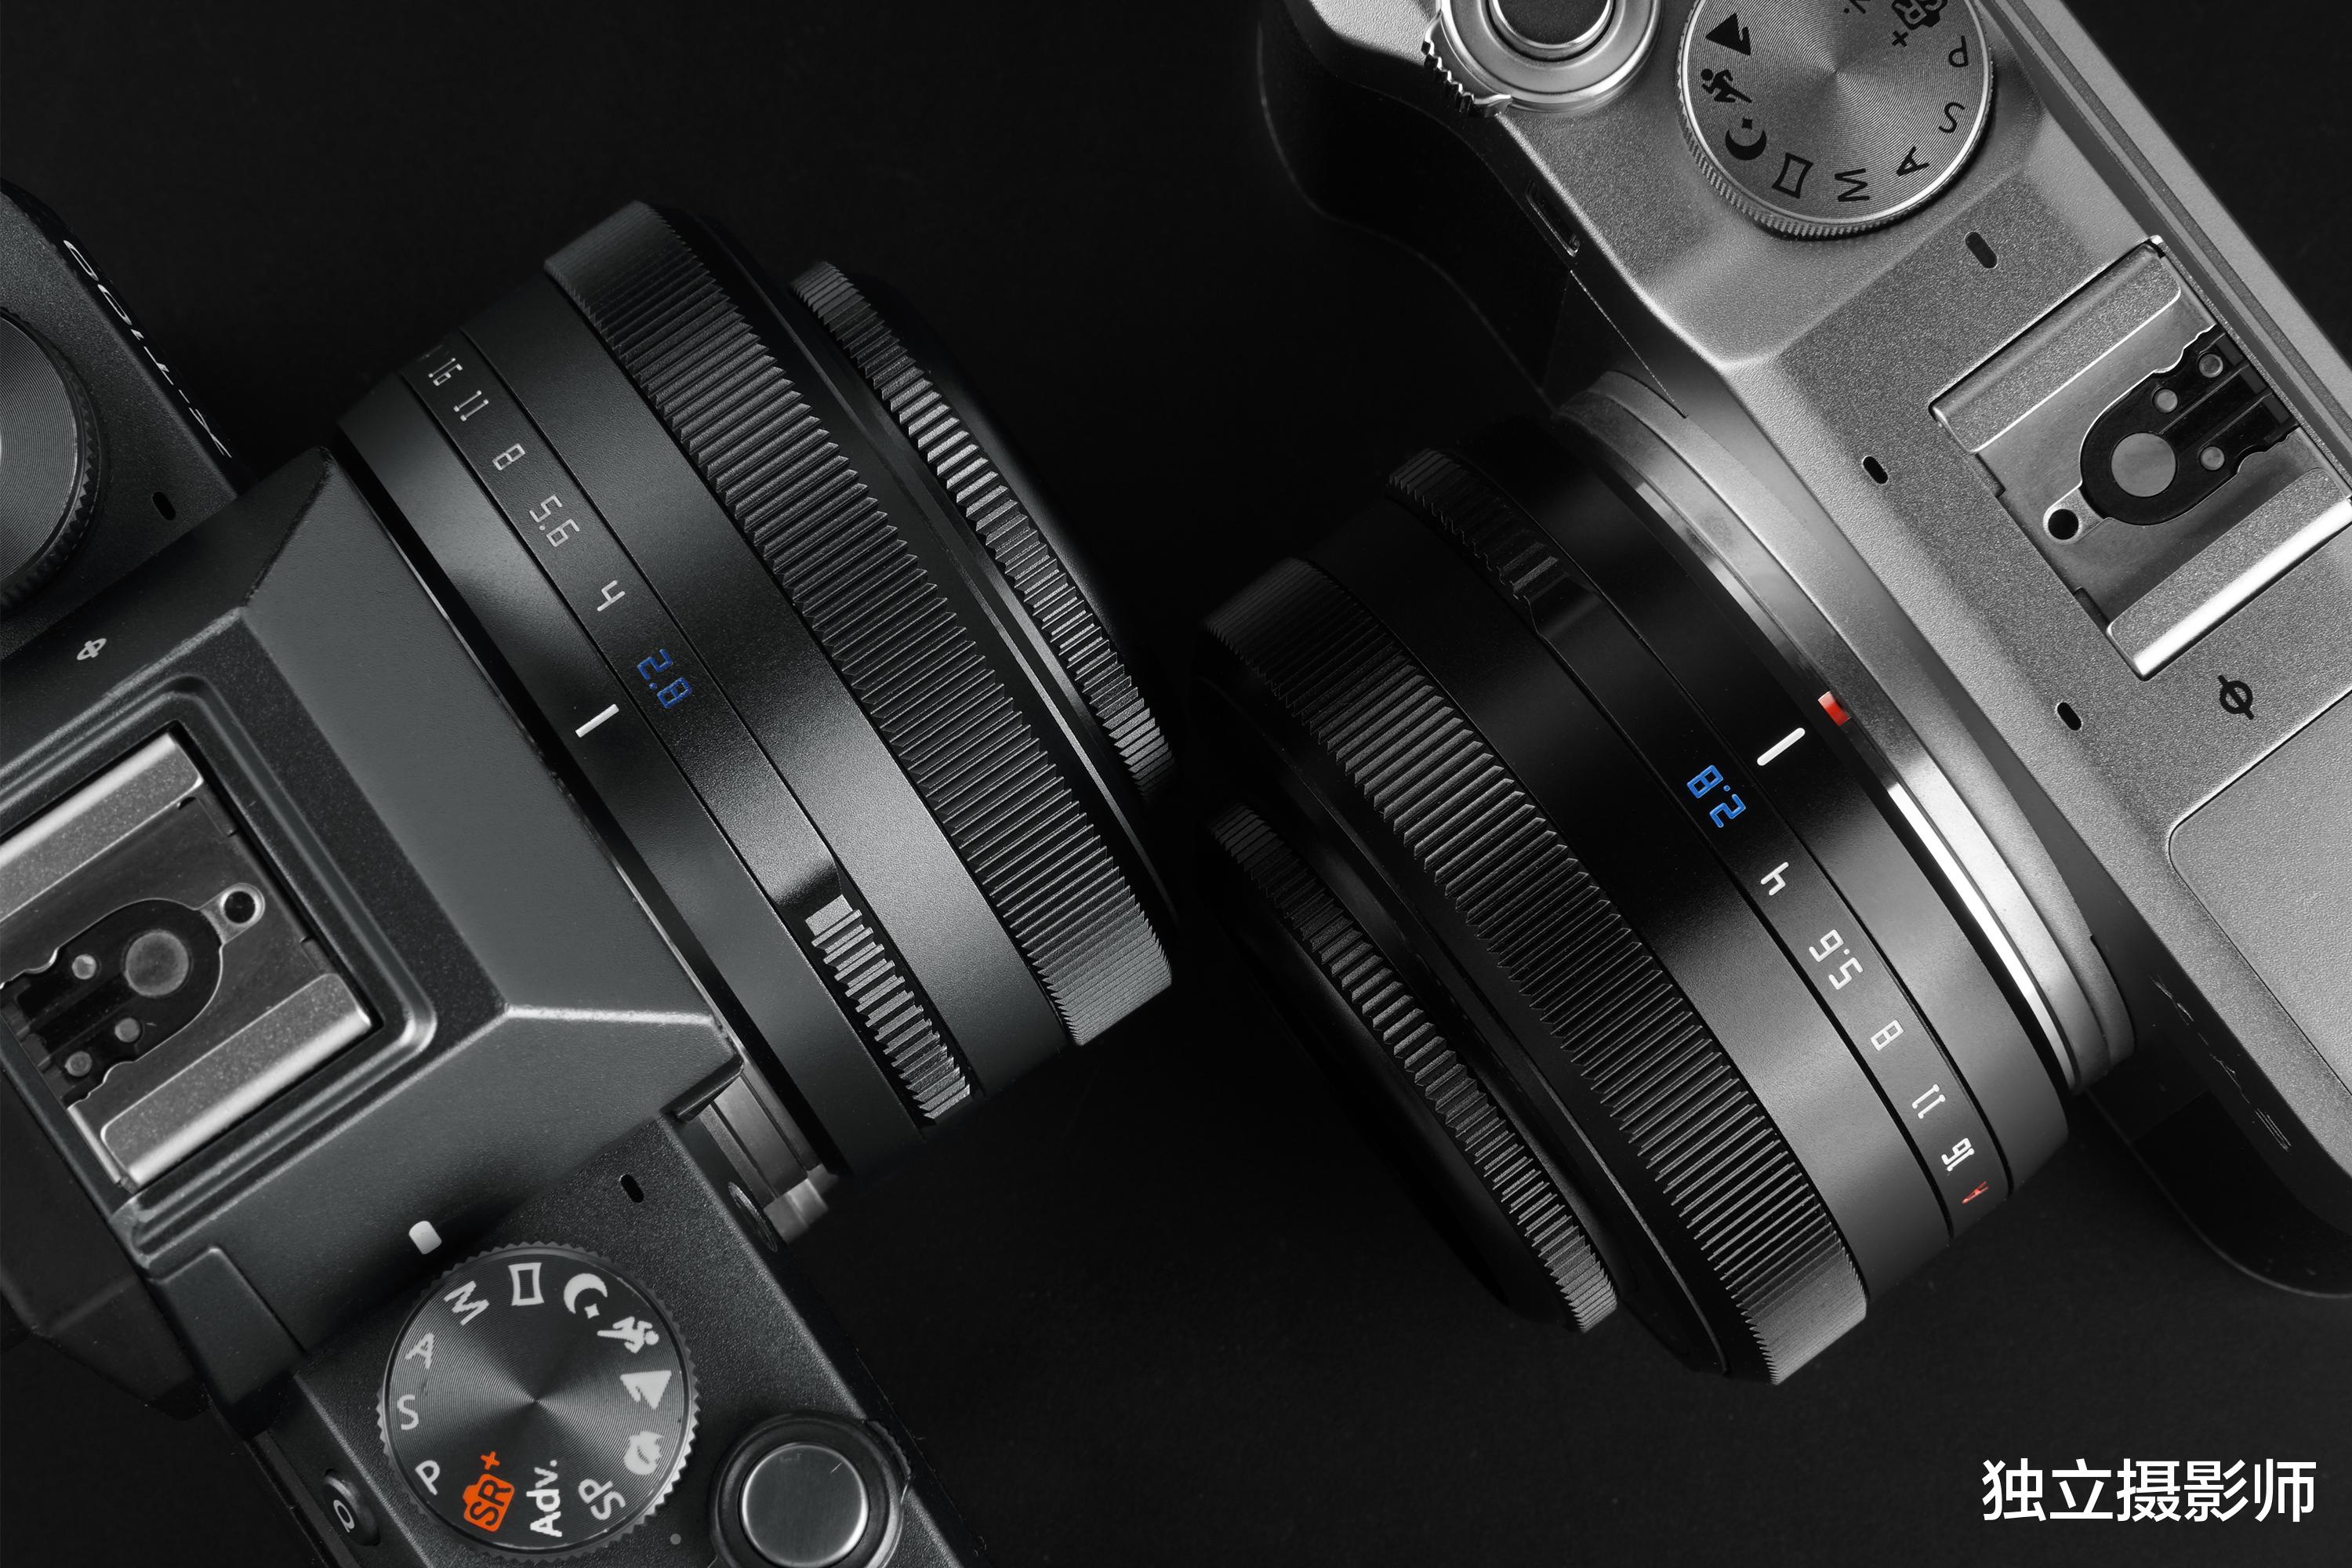 铭匠发布27mm F2.8富士X卡口自动对焦镜头